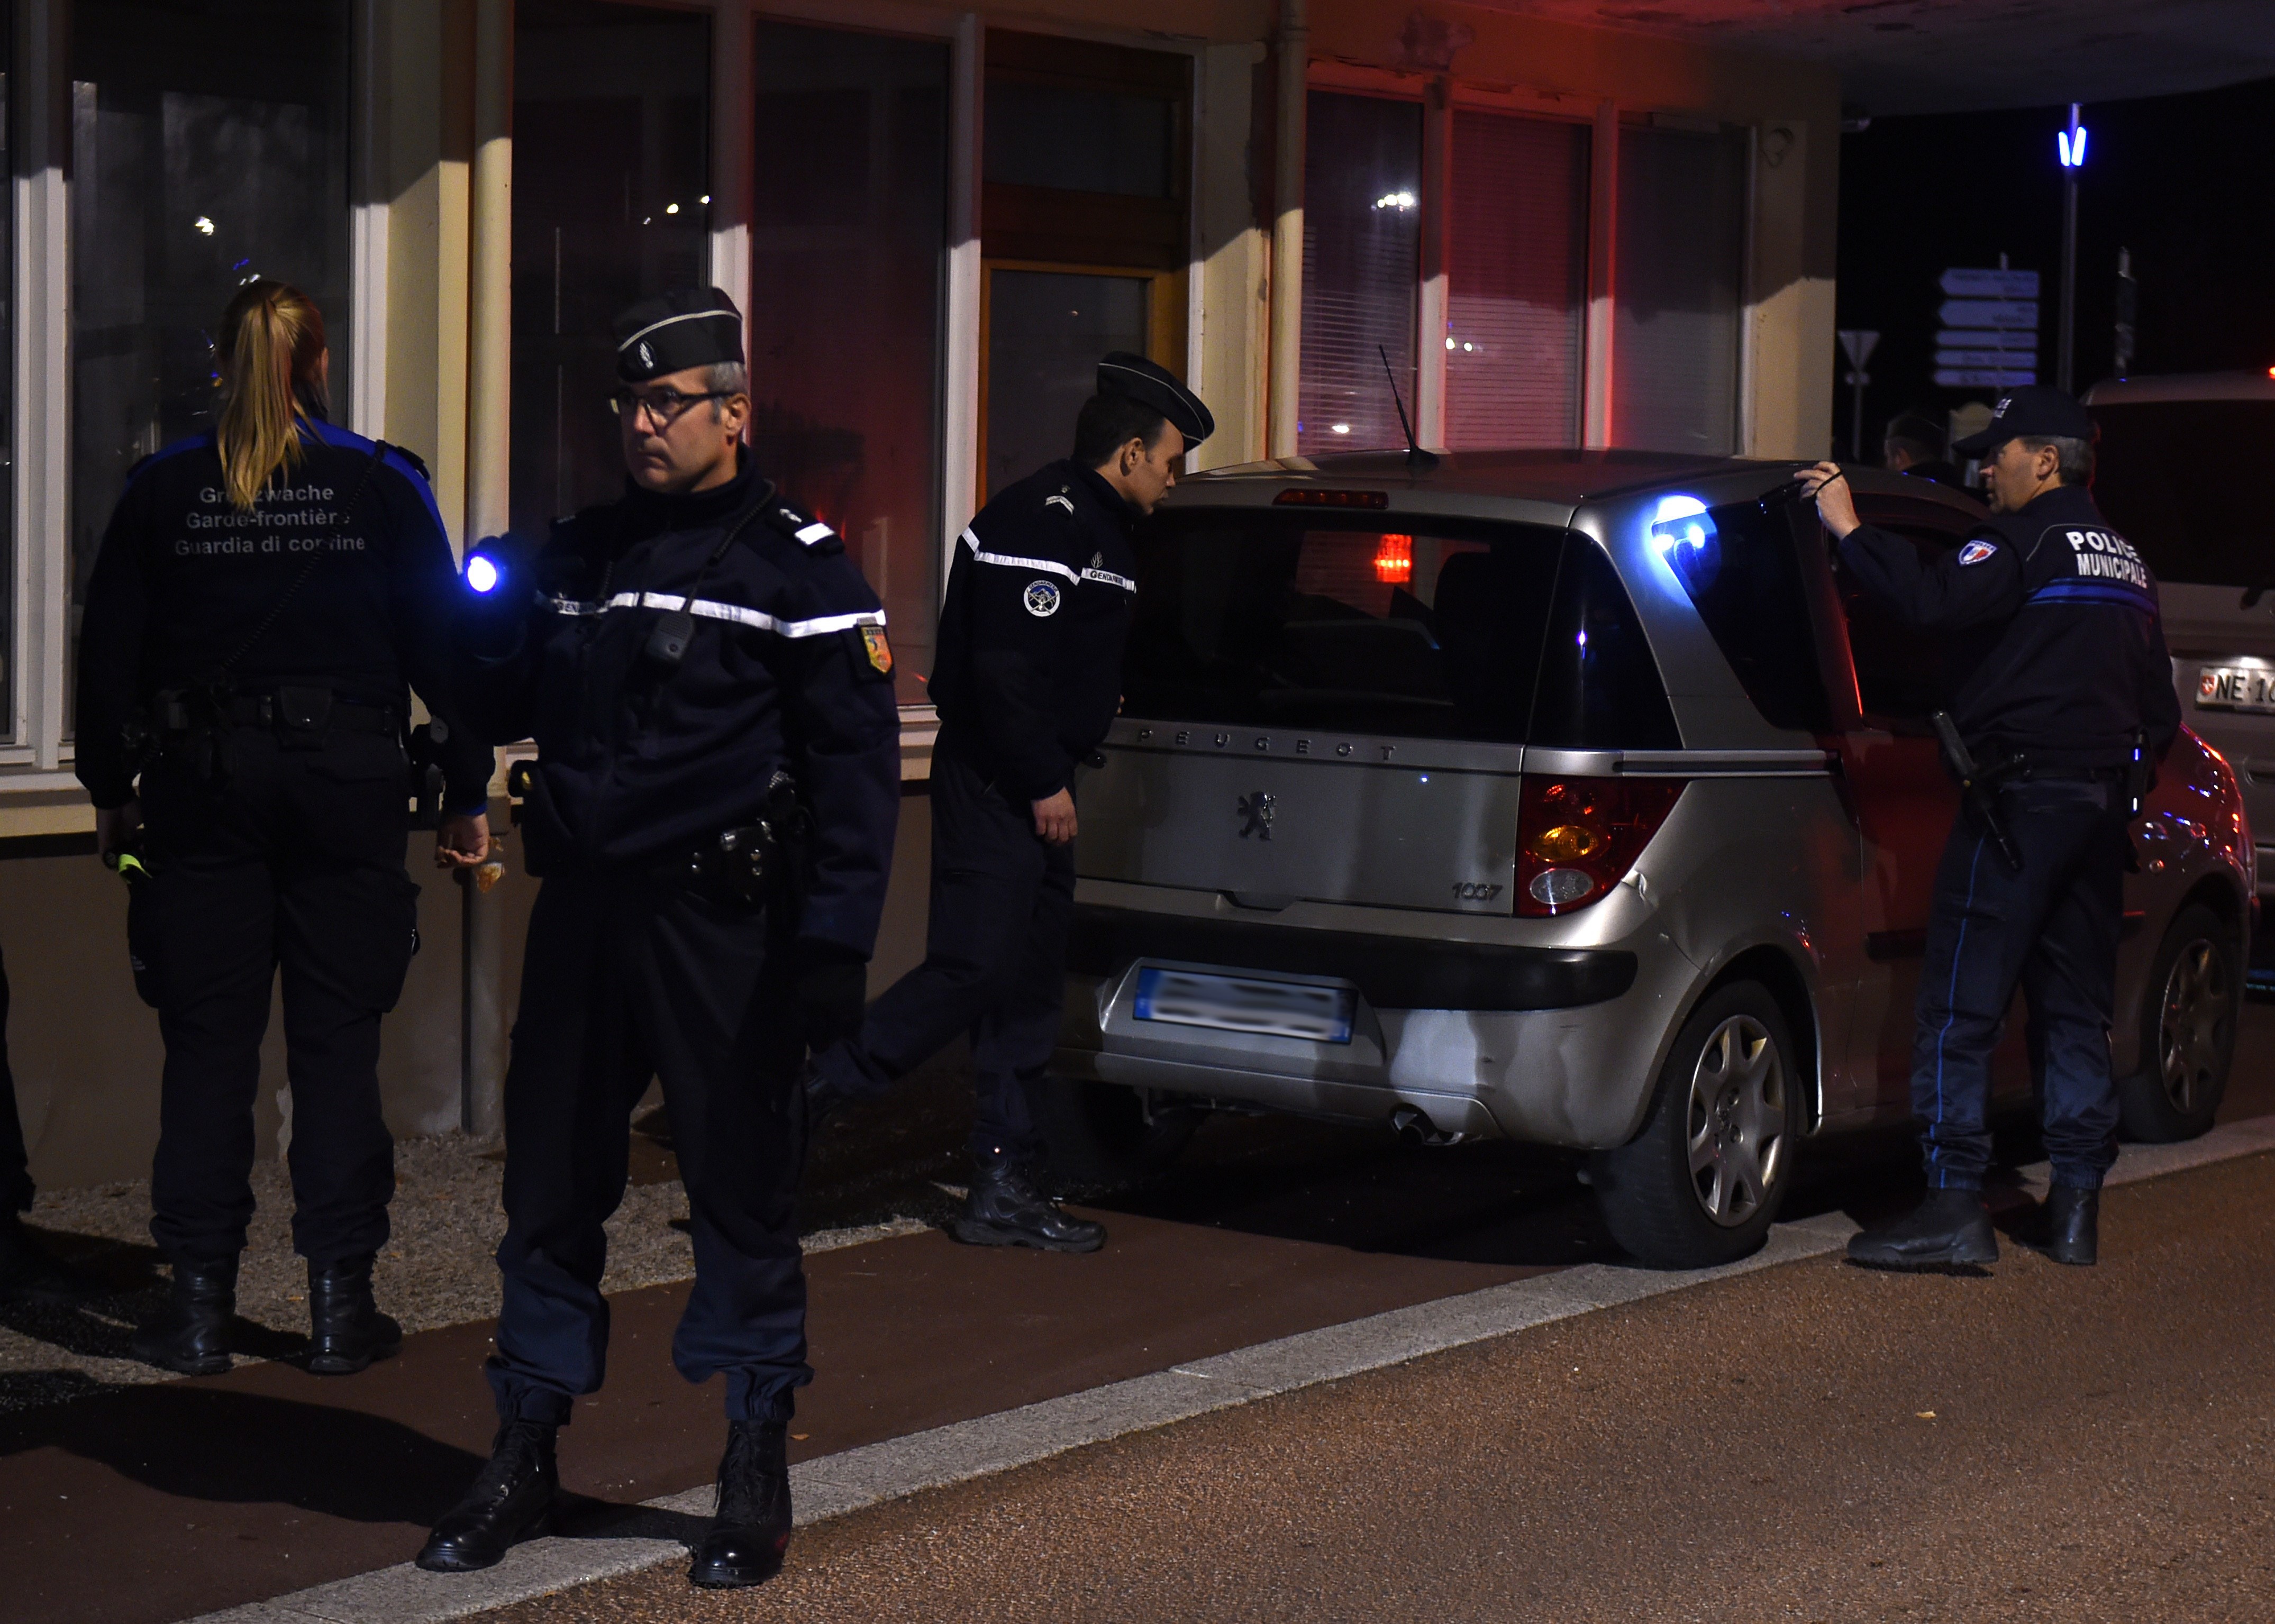 Frankreich wies fast 1000 Reisende wegen Sicherheitsbedenken an Grenze ab